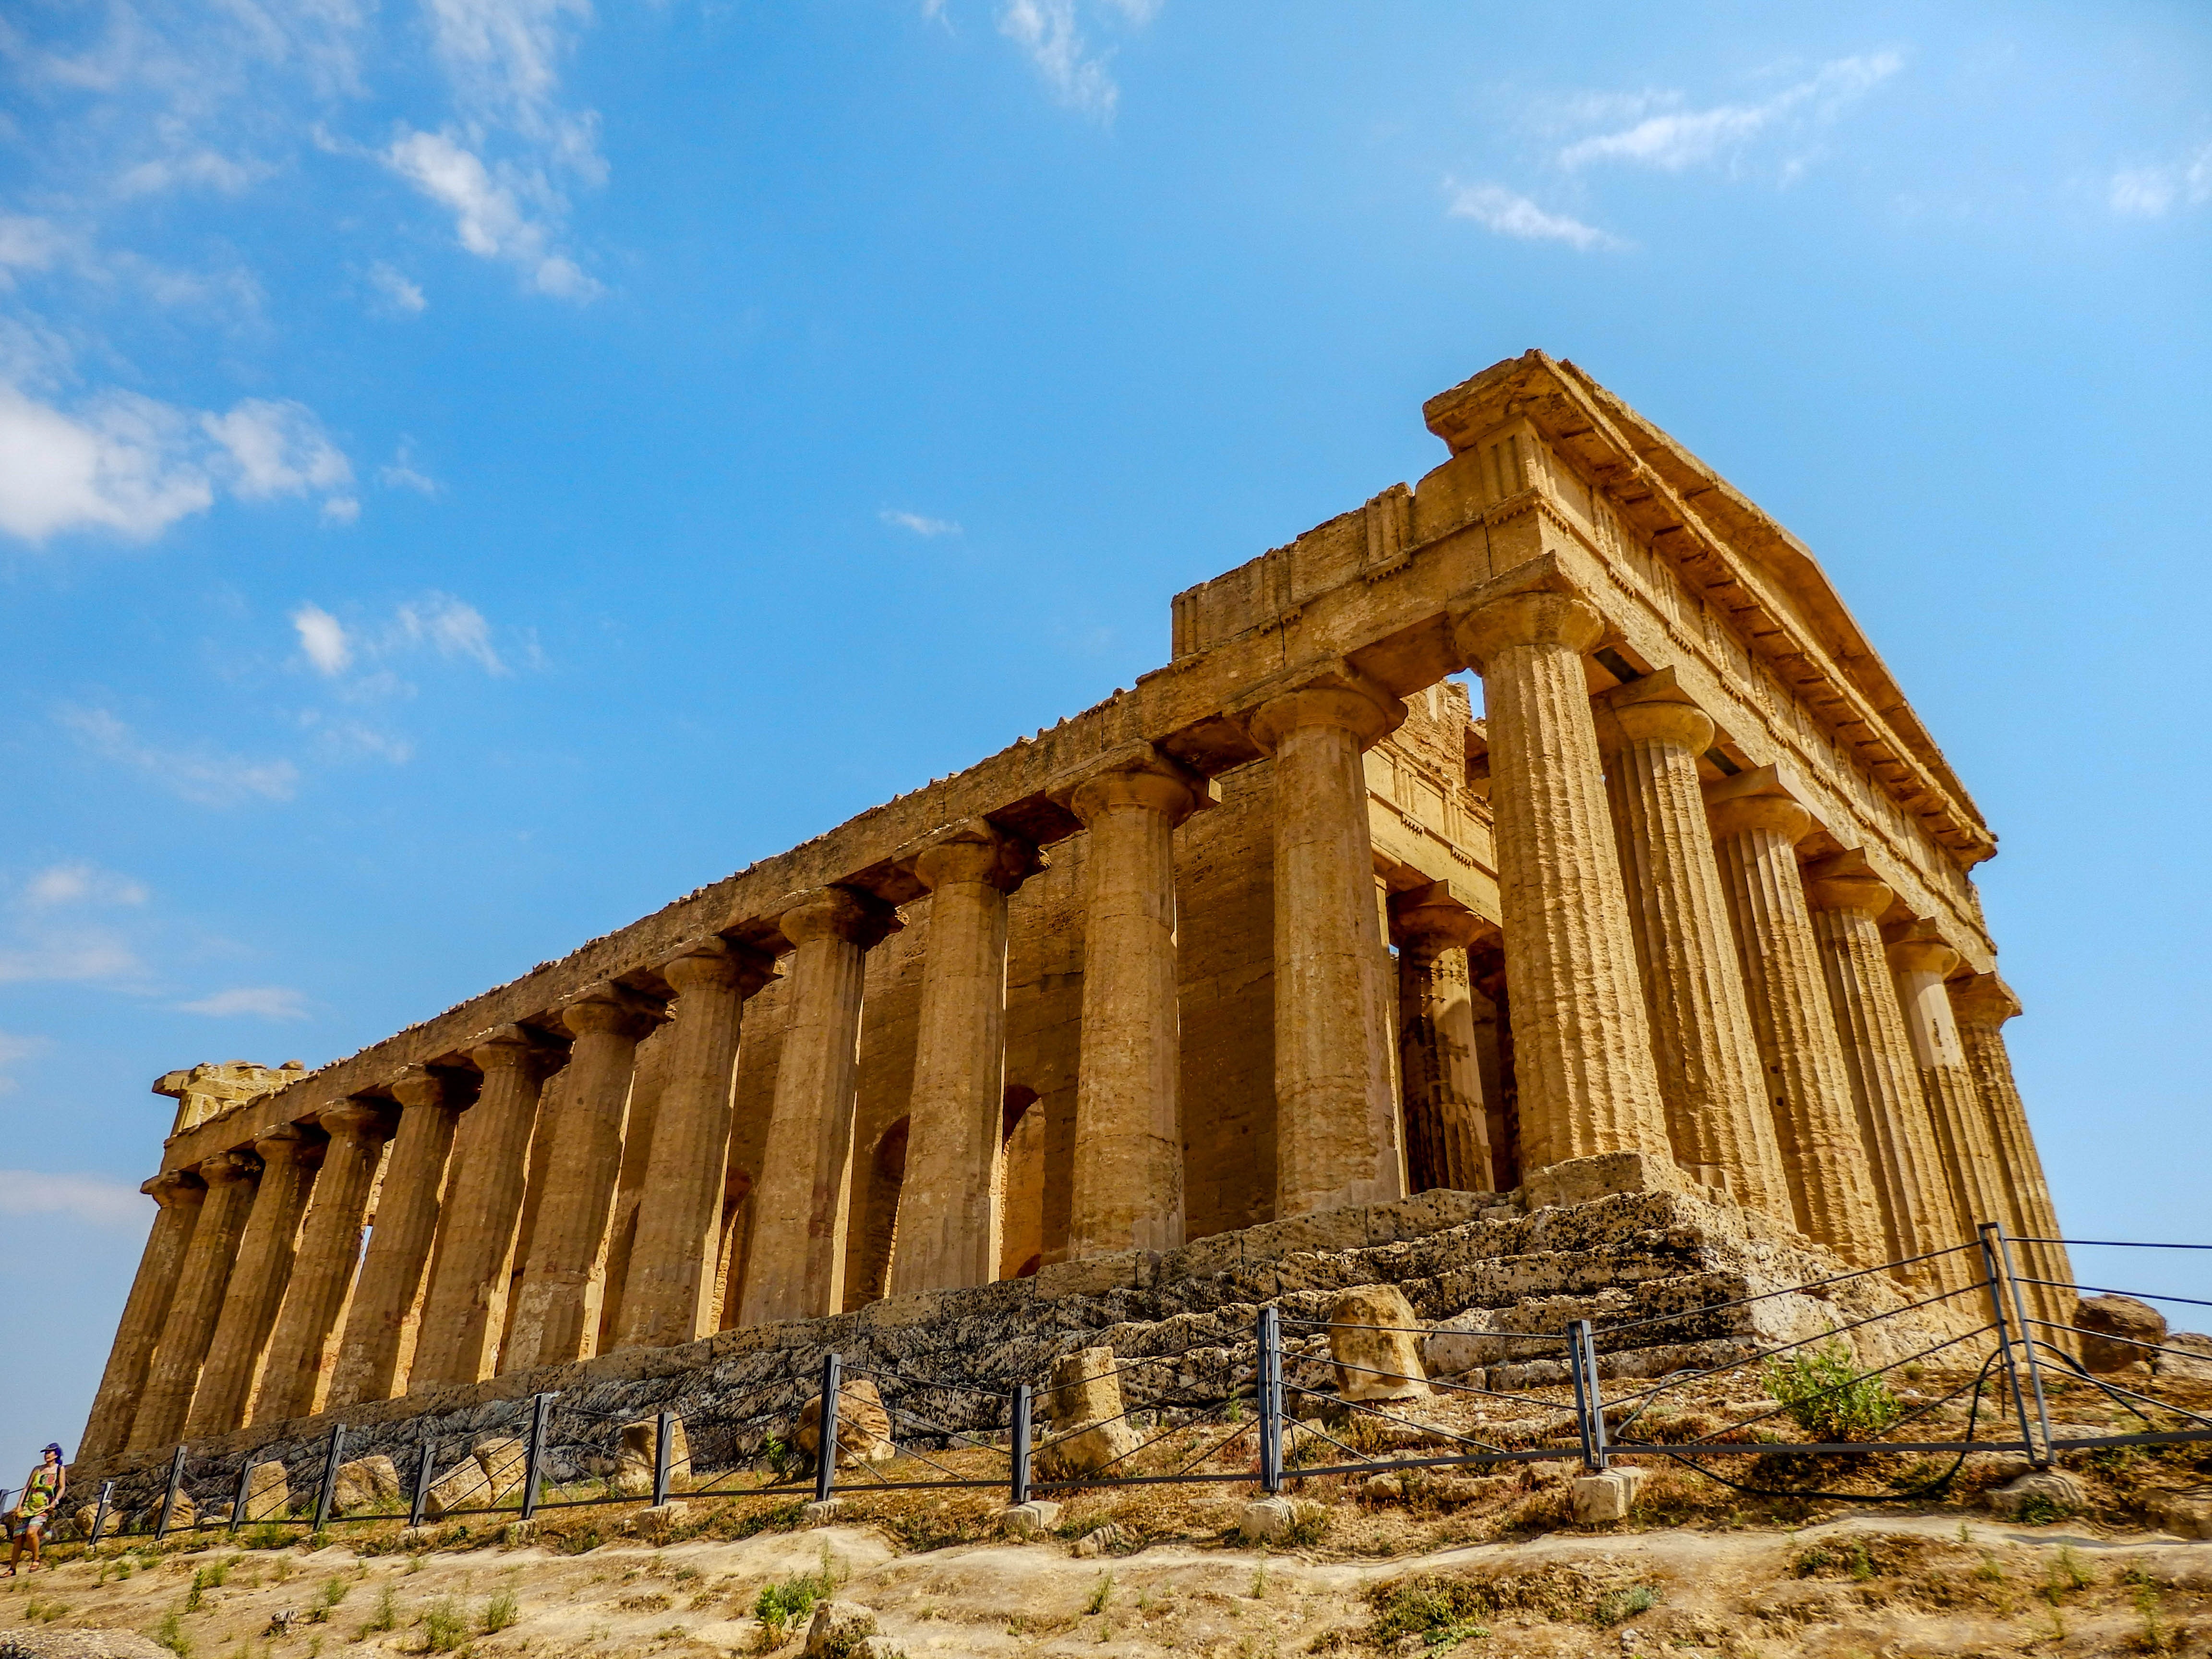 Храмы древней Греции